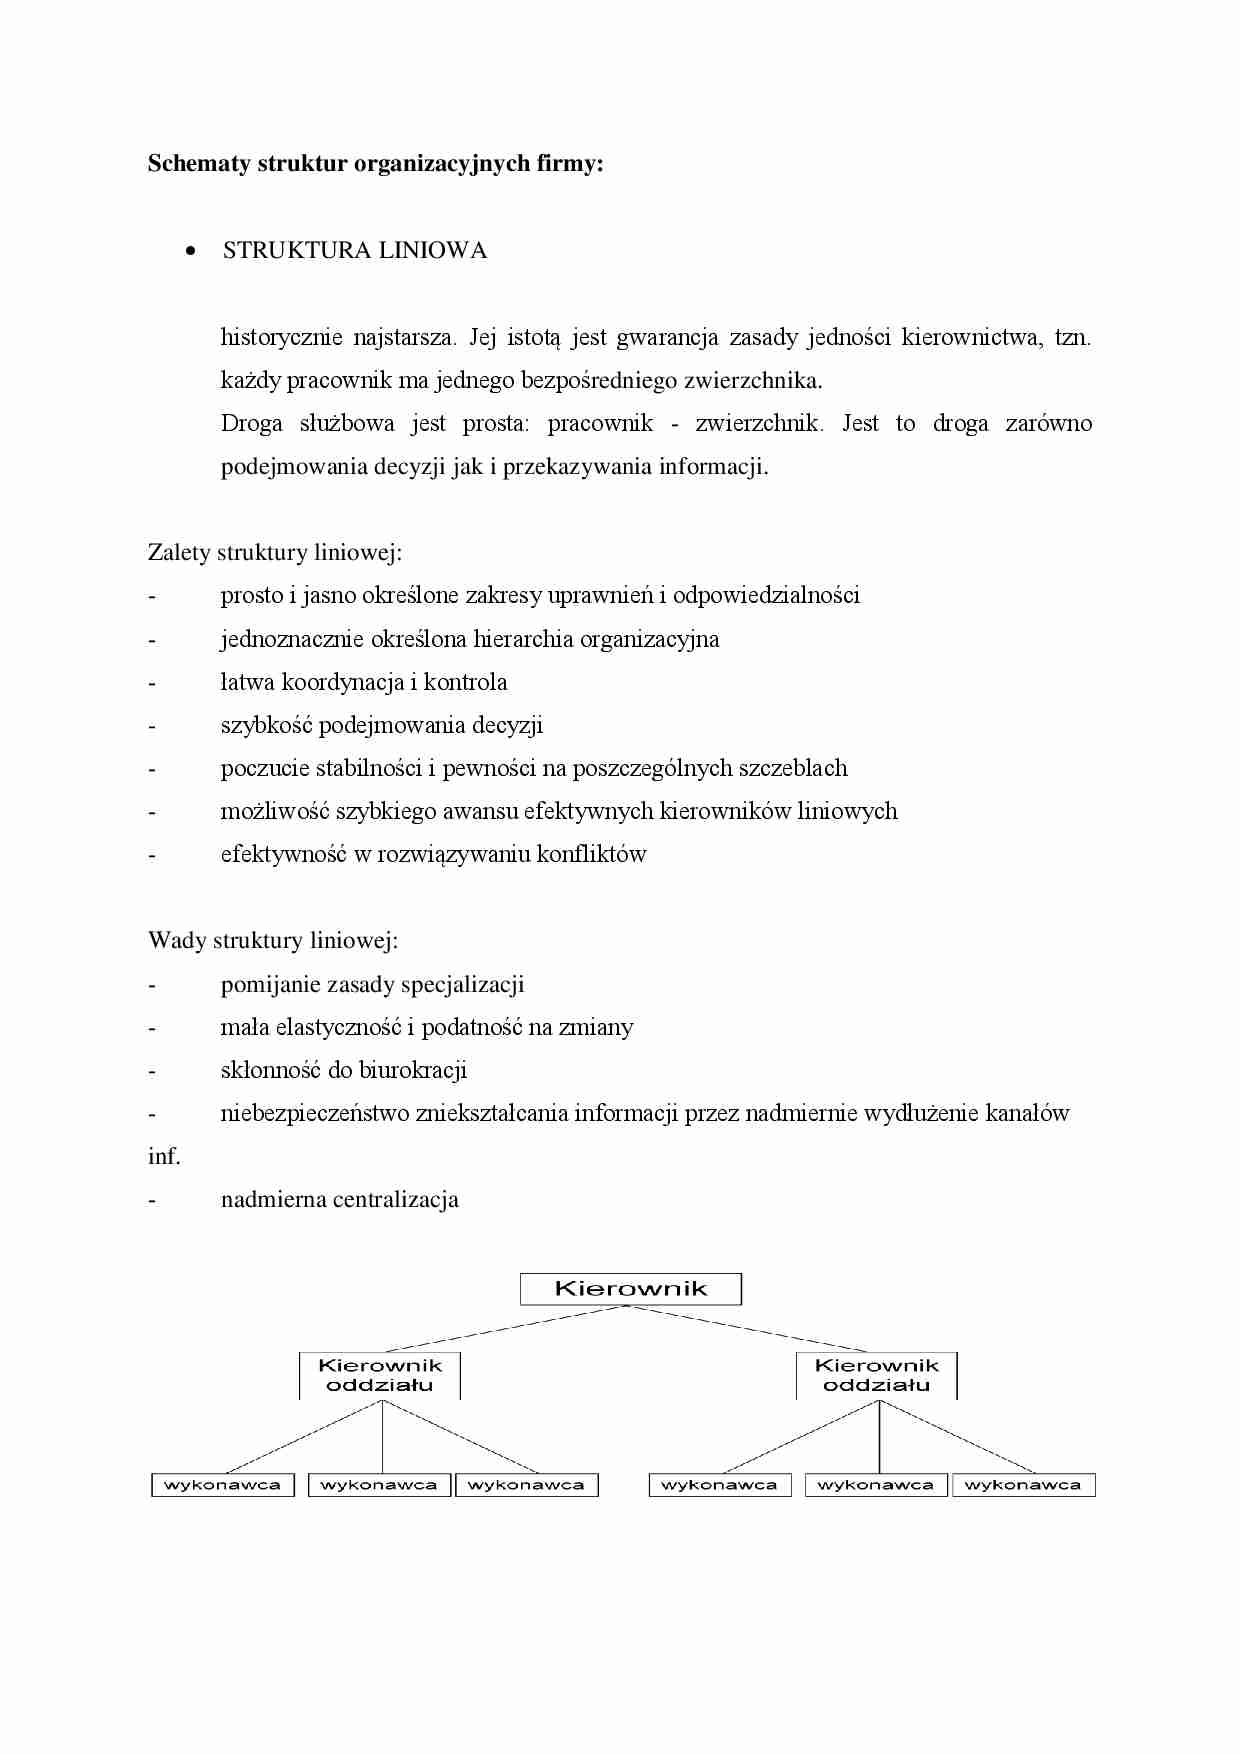 Schematy struktur organizacyjnych firmy - omówienie - strona 1